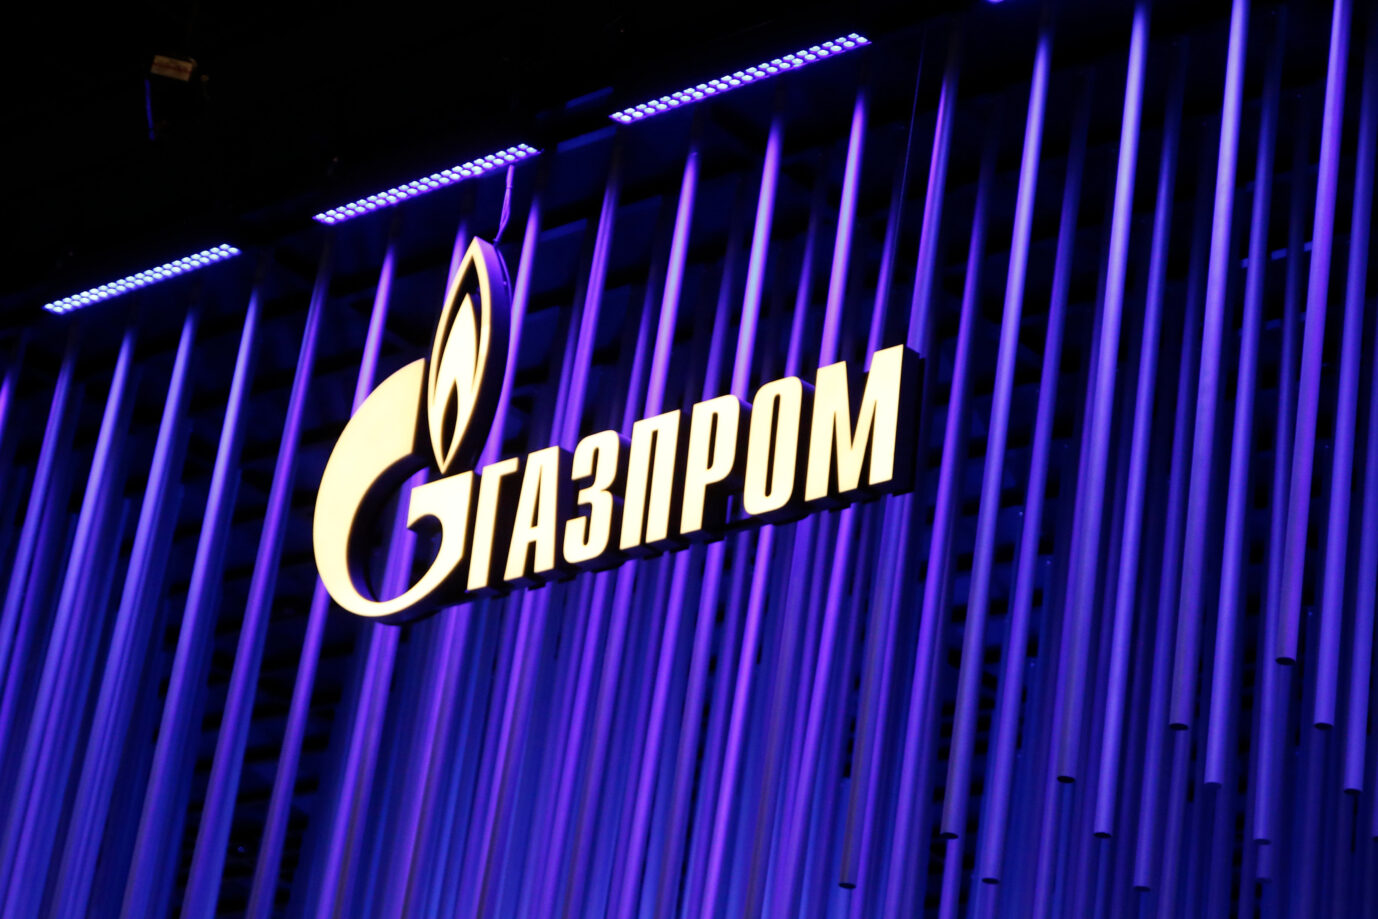 Gazprom-Logo: Auch Anleger des Energieunternehmens sind von den Sanktionen gegen Rußland betroffen und bangen um ihre Aktien Foto: picture alliance / Russian Look | Maksim Konstantinov